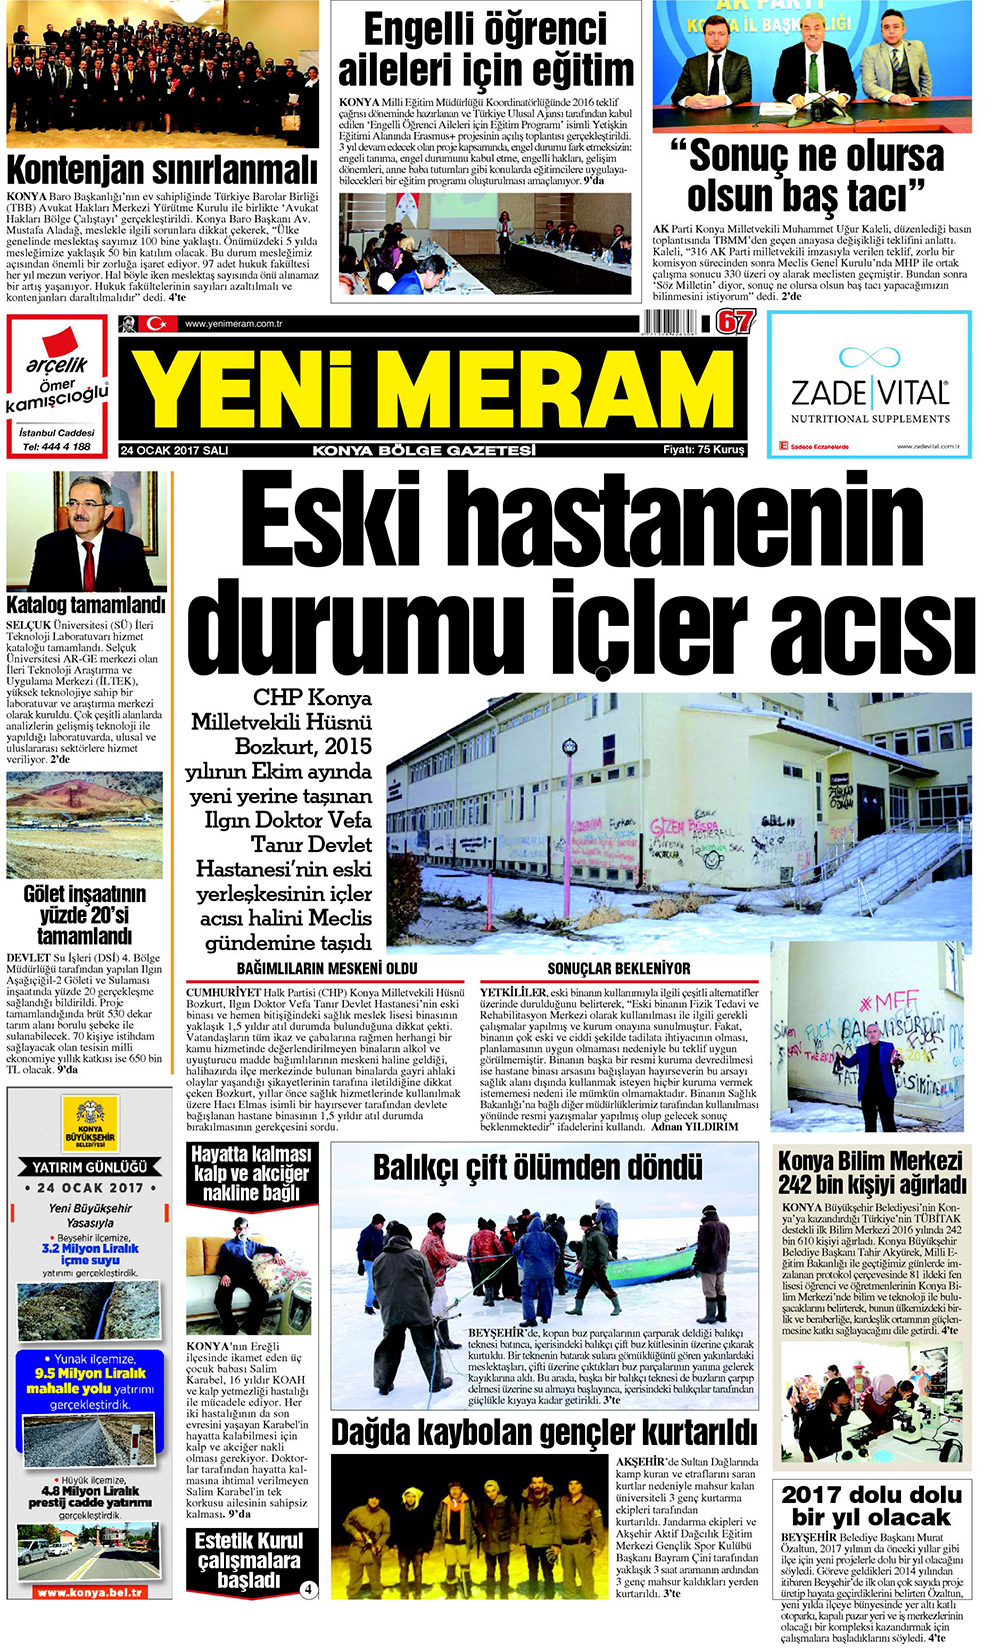 24 Ocak 2017 Yeni Meram Gazetesi